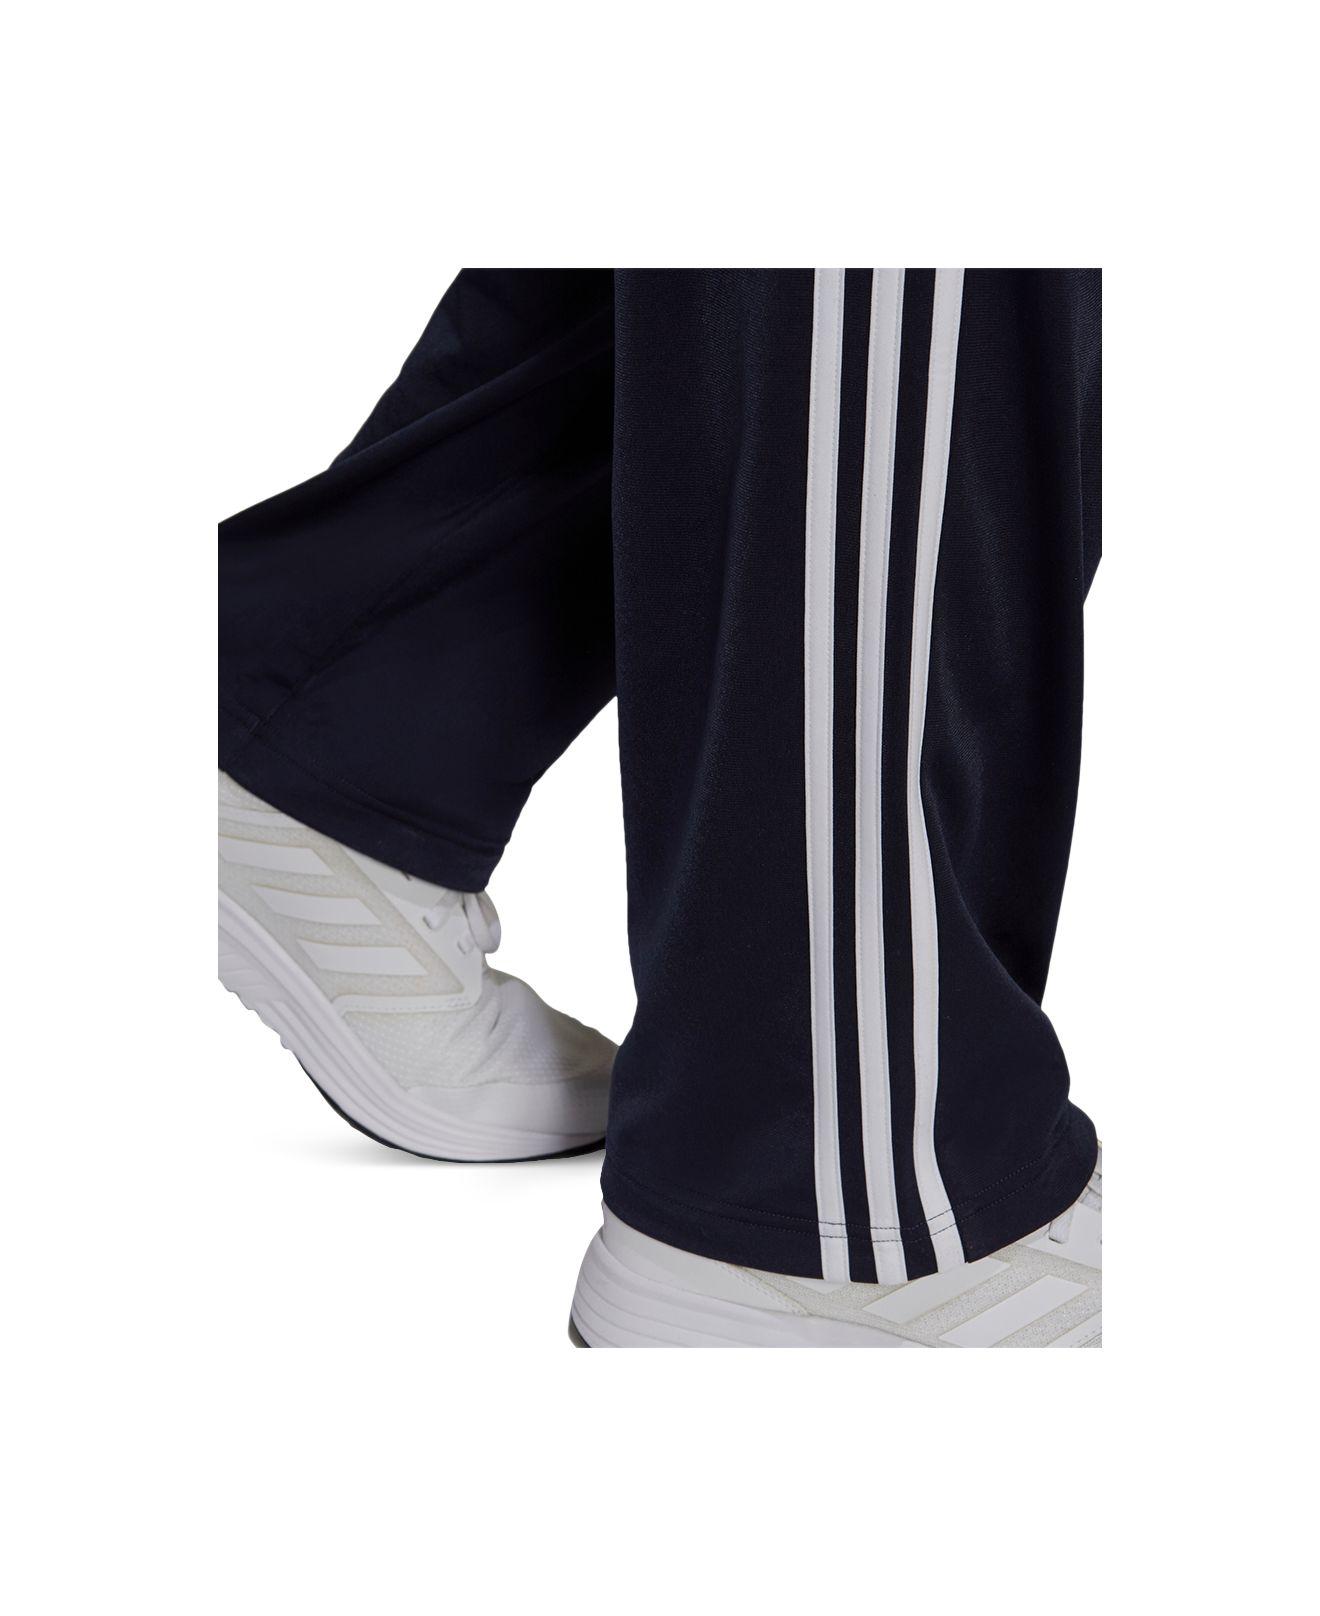 adidas Men's Primegreen Essentials Warm-Up Open Hem 3-Stripes Track Pants -  Macy's